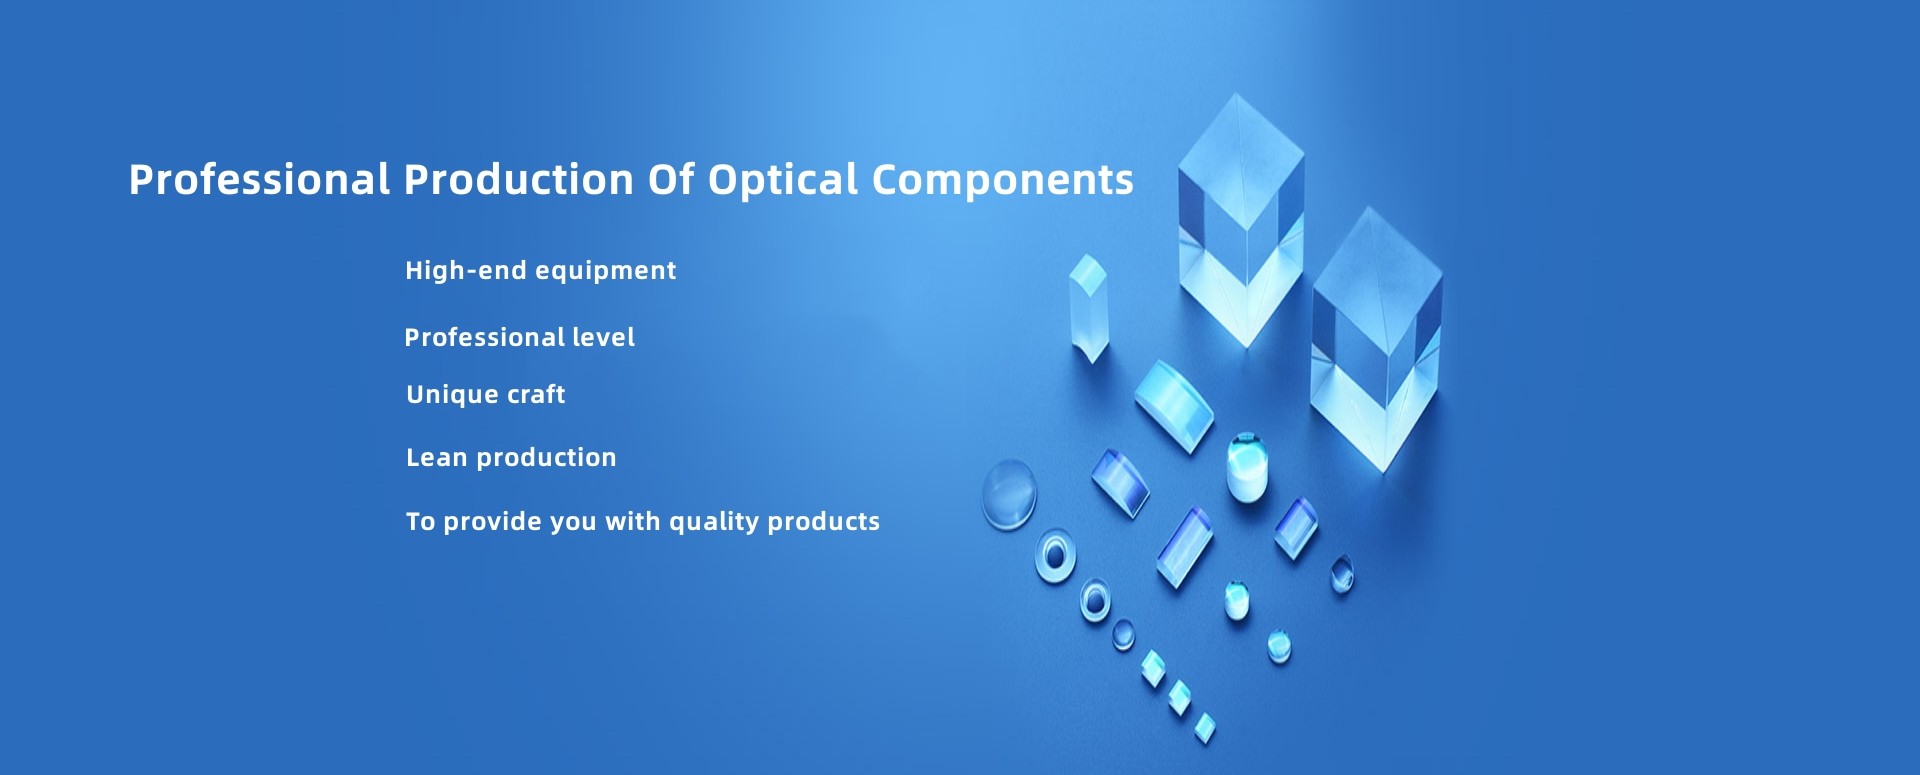 Professionelle Produktion von Fabriken für optische Komponenten